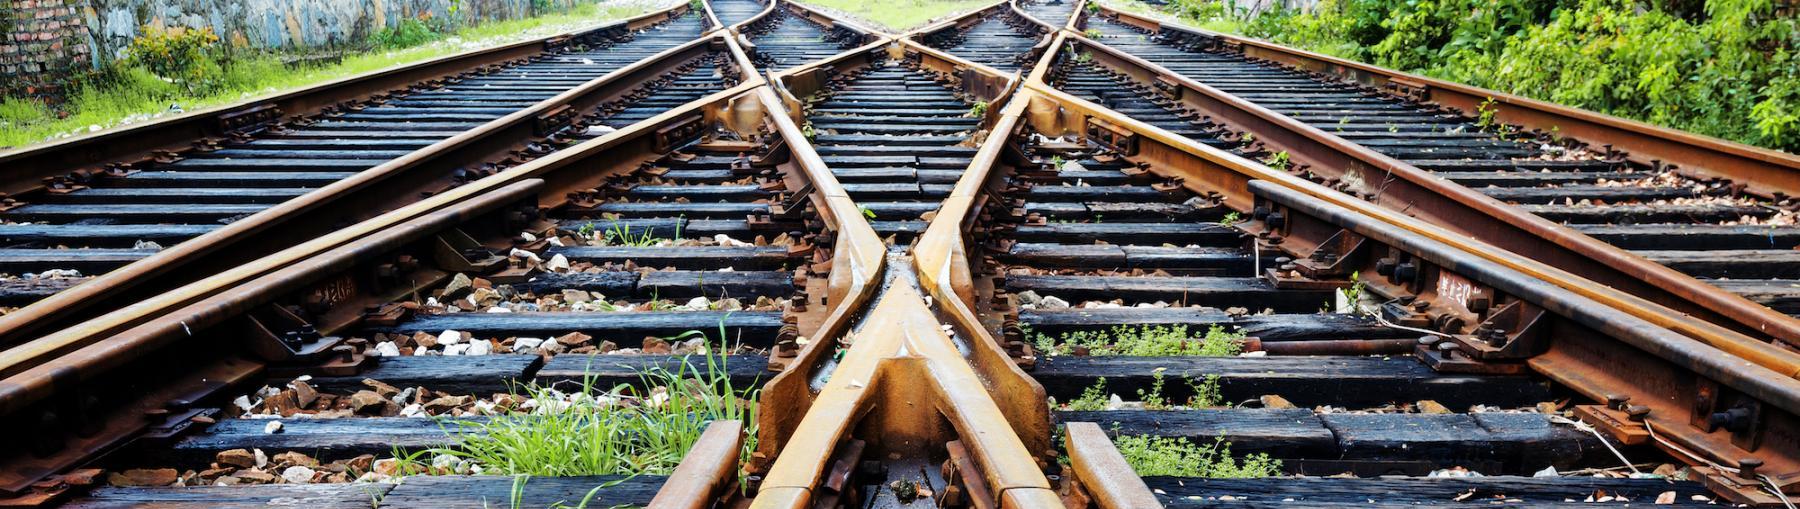 Zmodernizują linię kolejową z Zawiercia do Tarnowskich Gór. Fot. Shutterstock